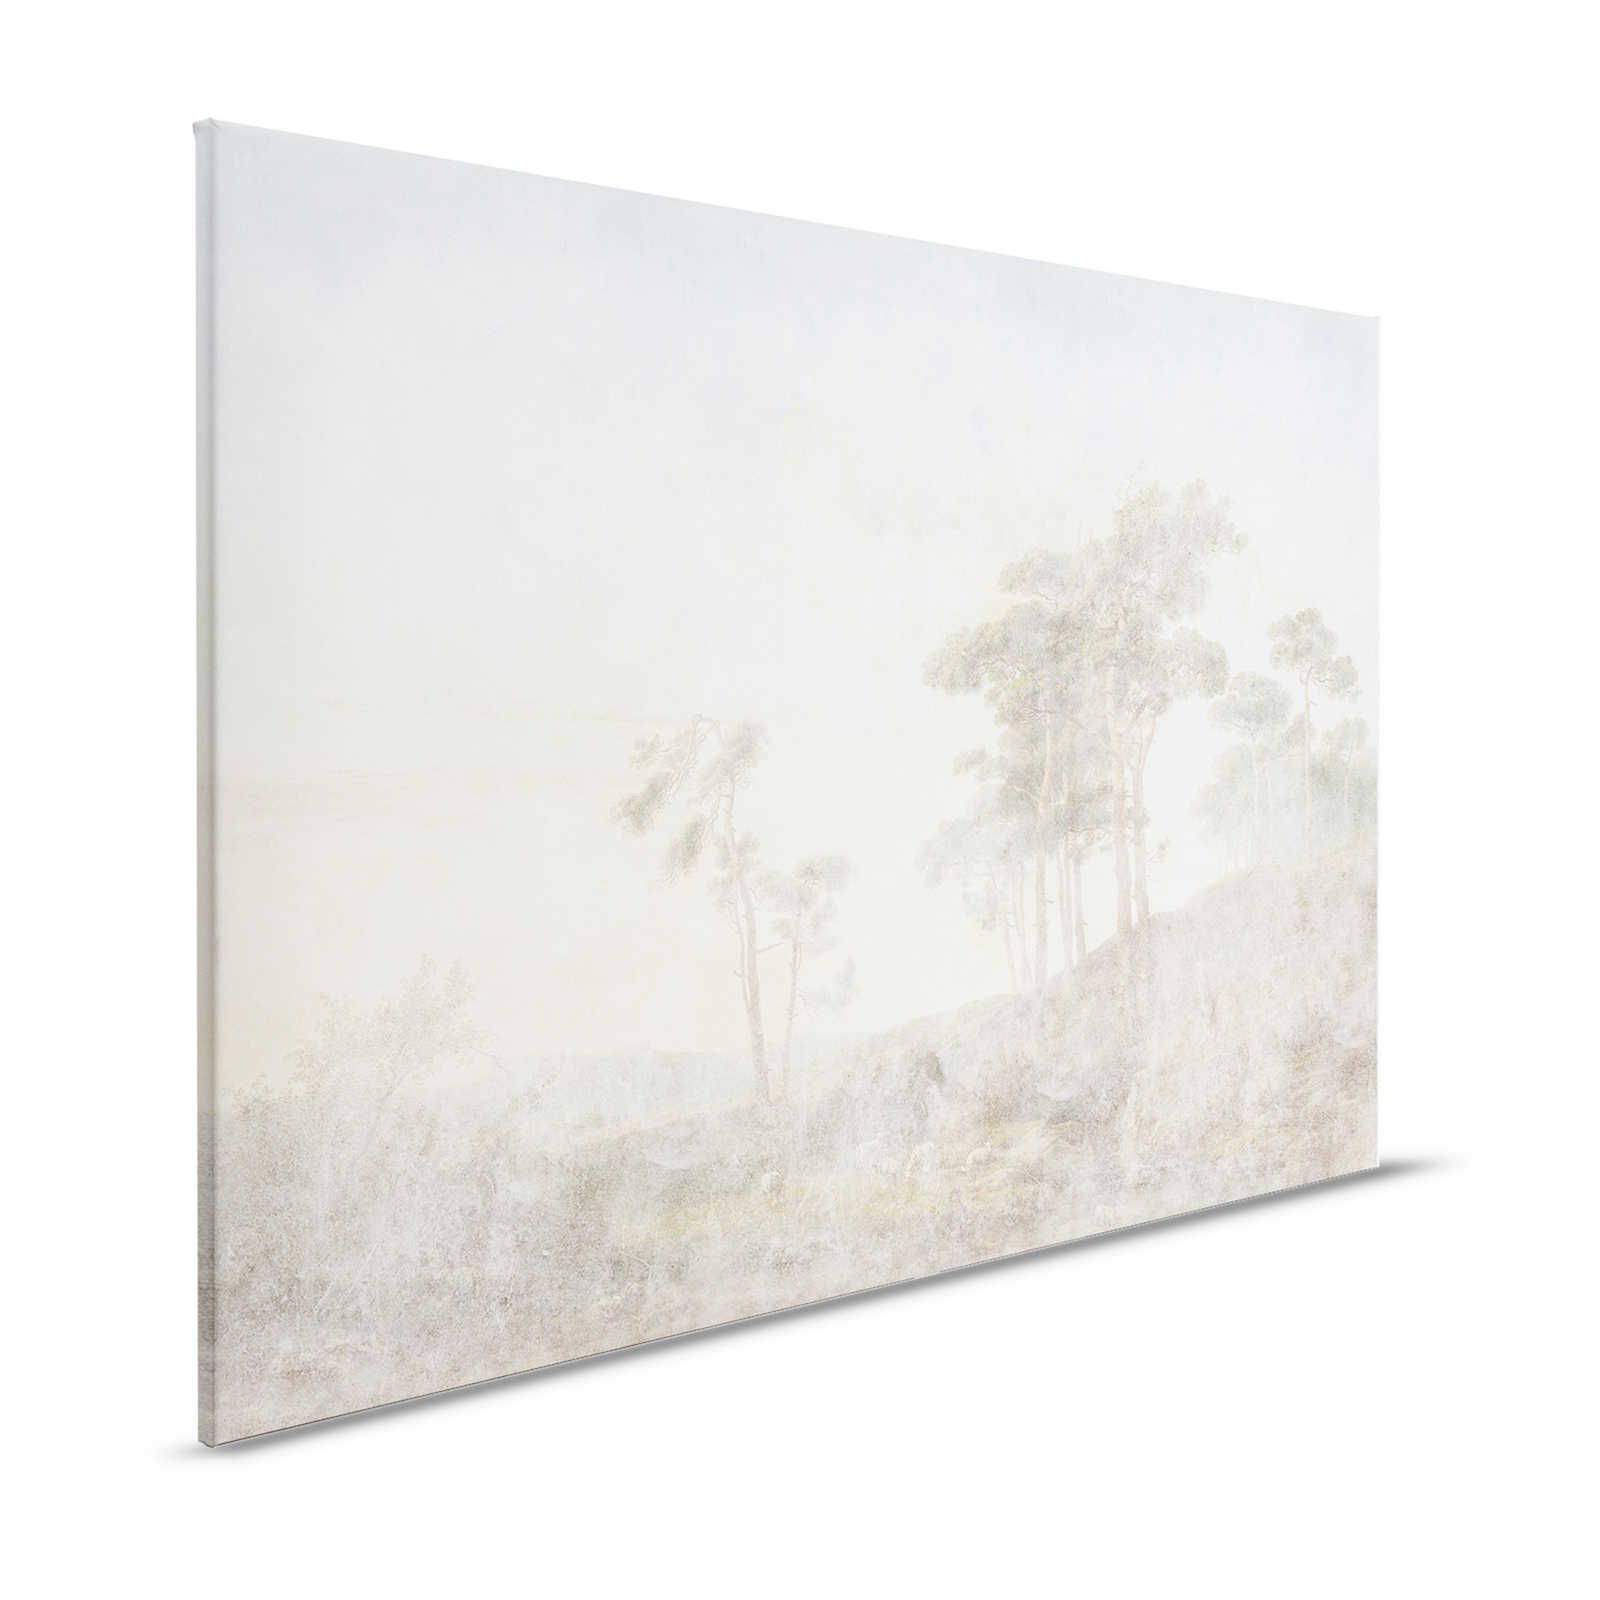 Romantic Grove 1 - Peinture sur toile aspect usé délavé - 1,20 m x 0,80 m
